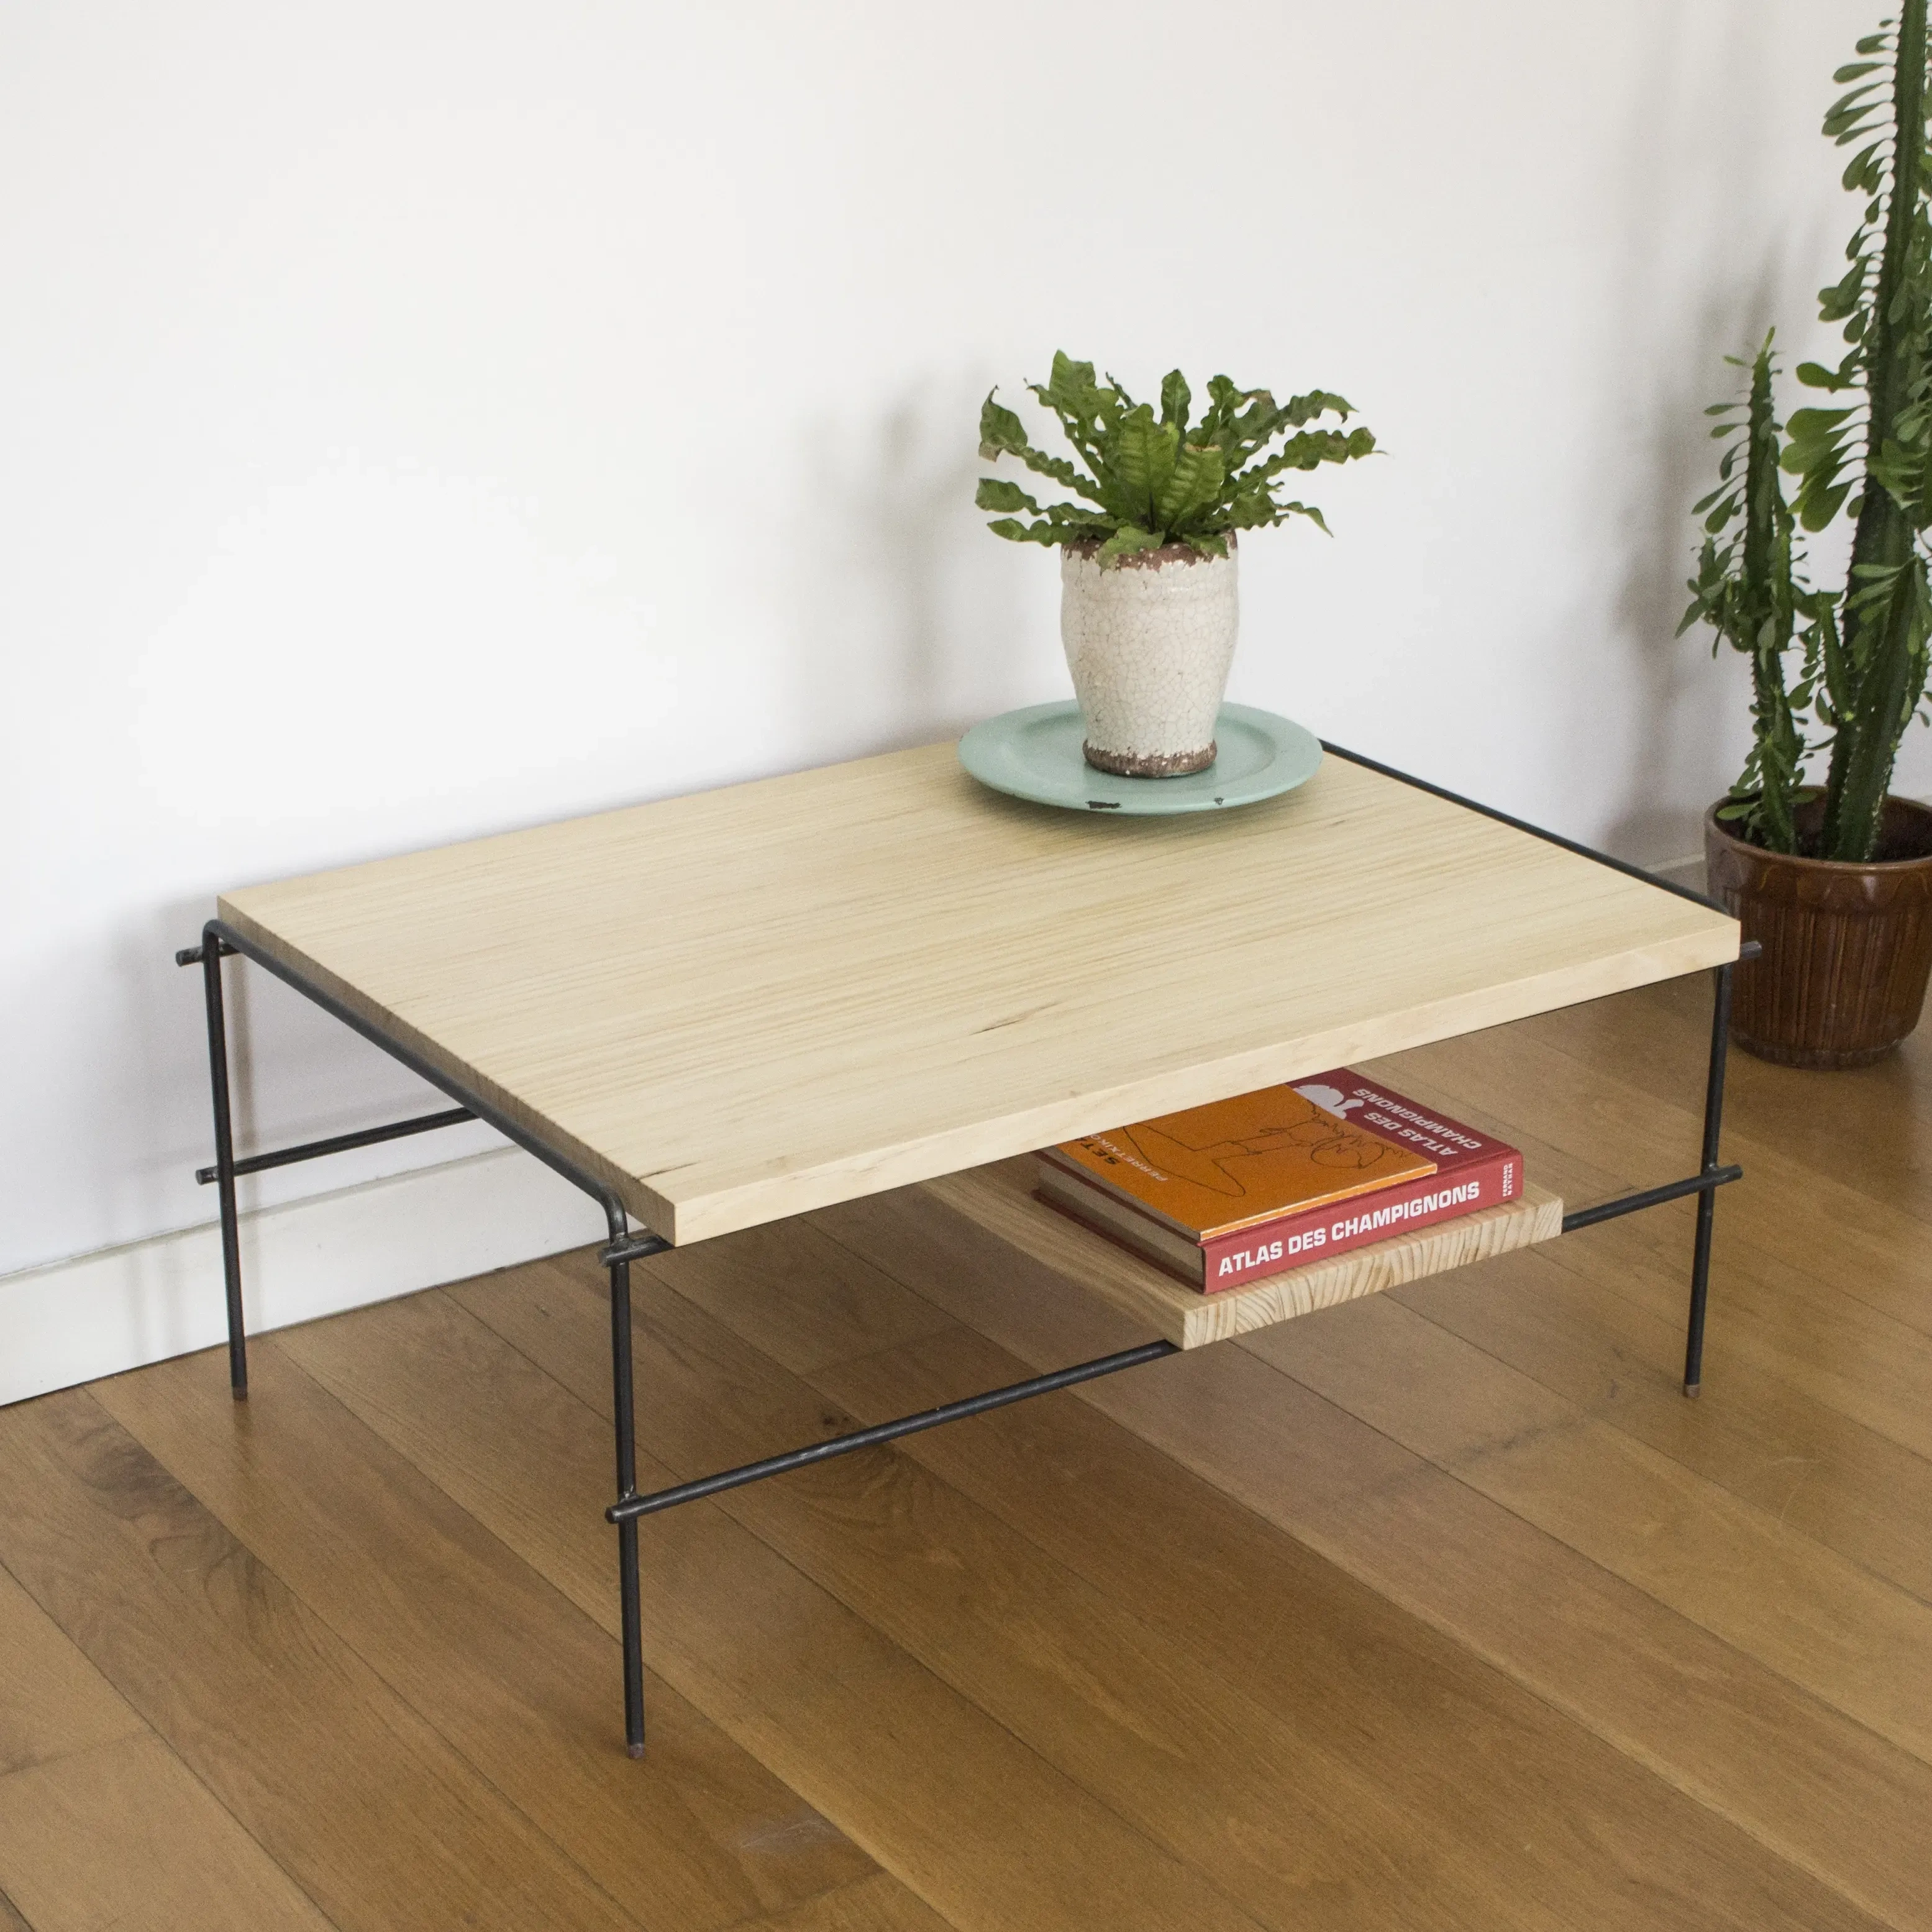 Planta y libro sobre mesa baja de madera con doble altura.